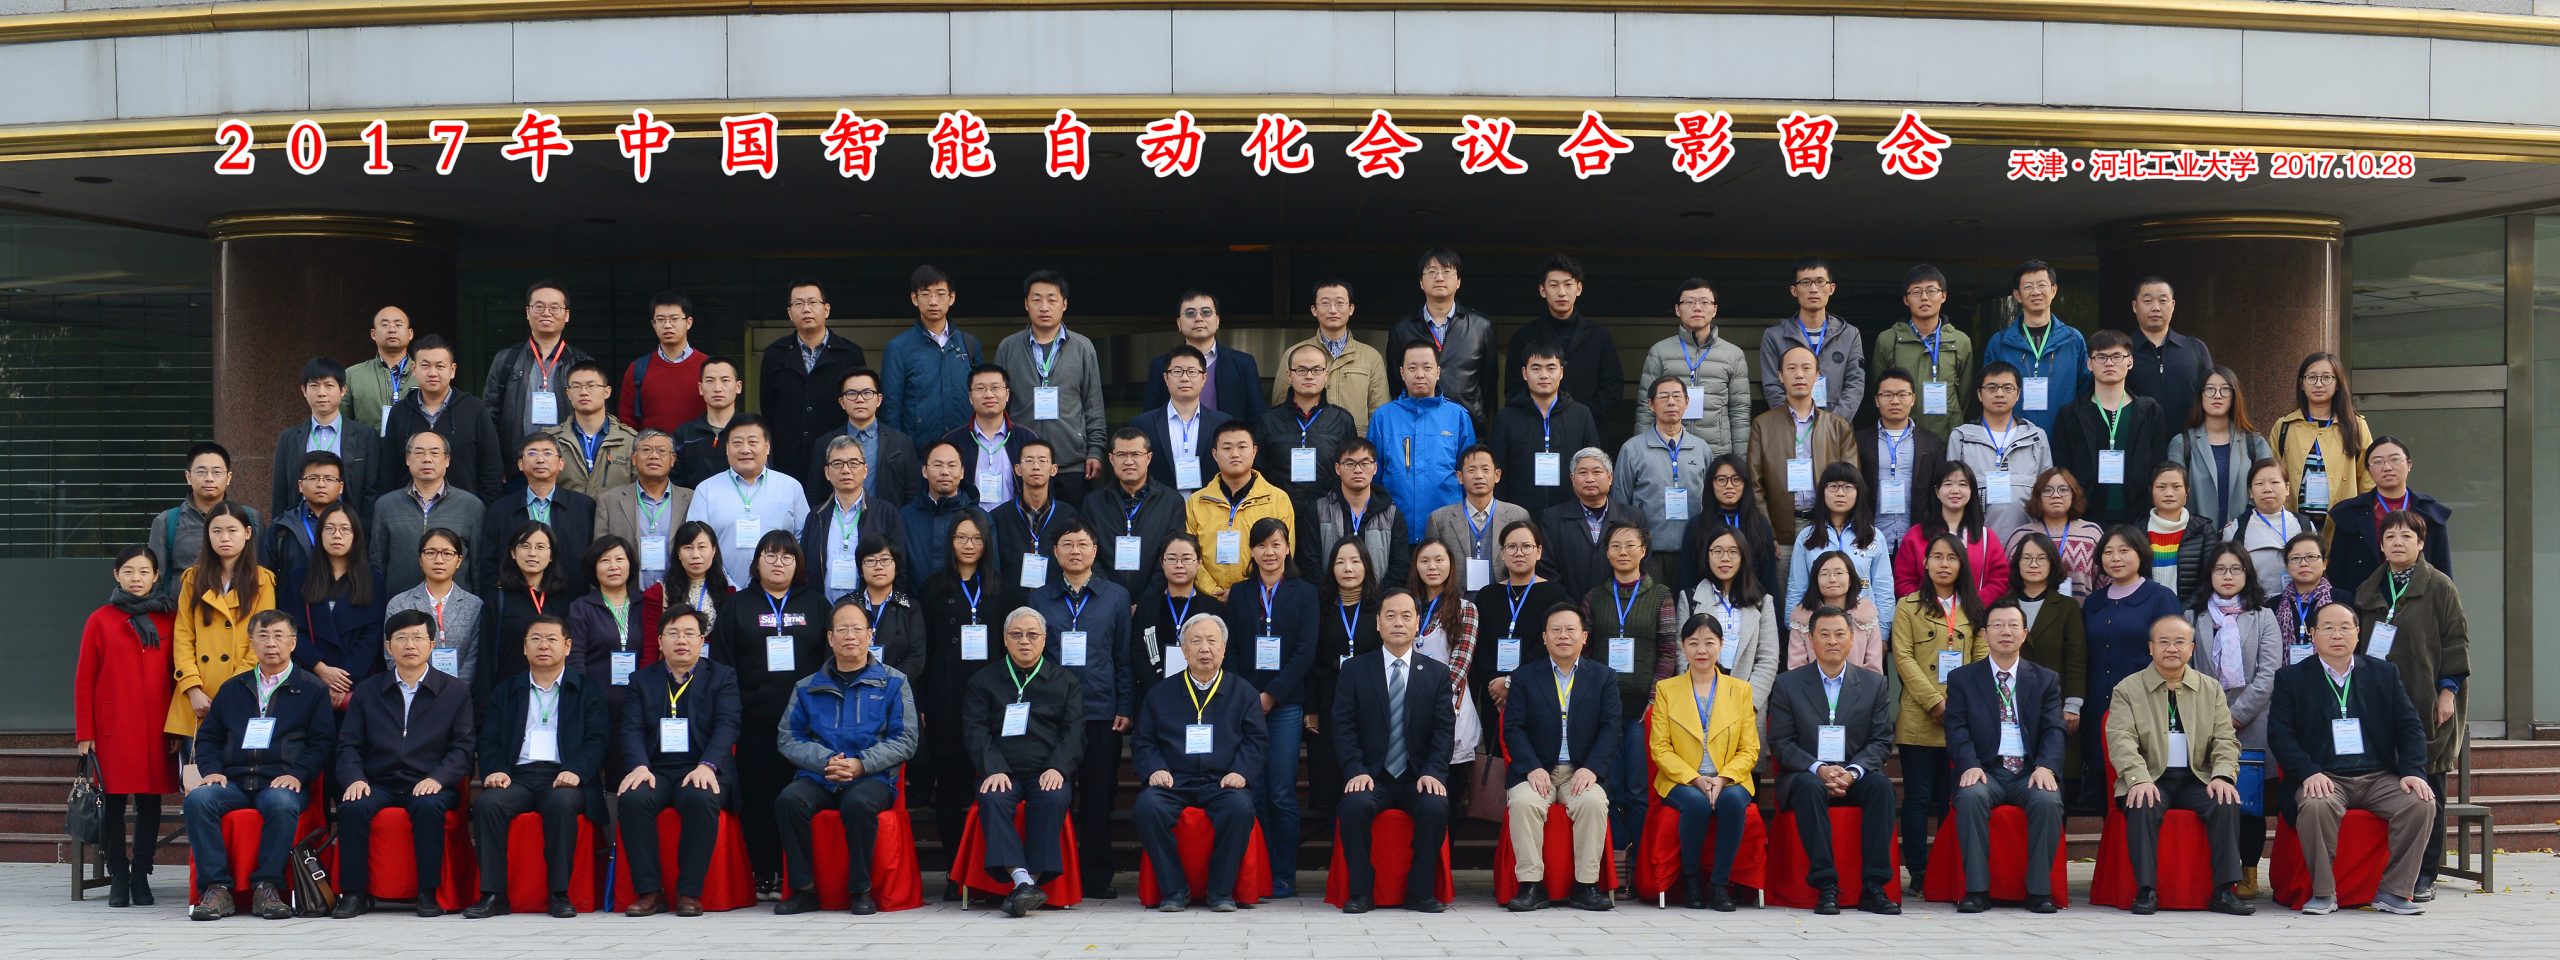 2017年中国智能自动化大会合影